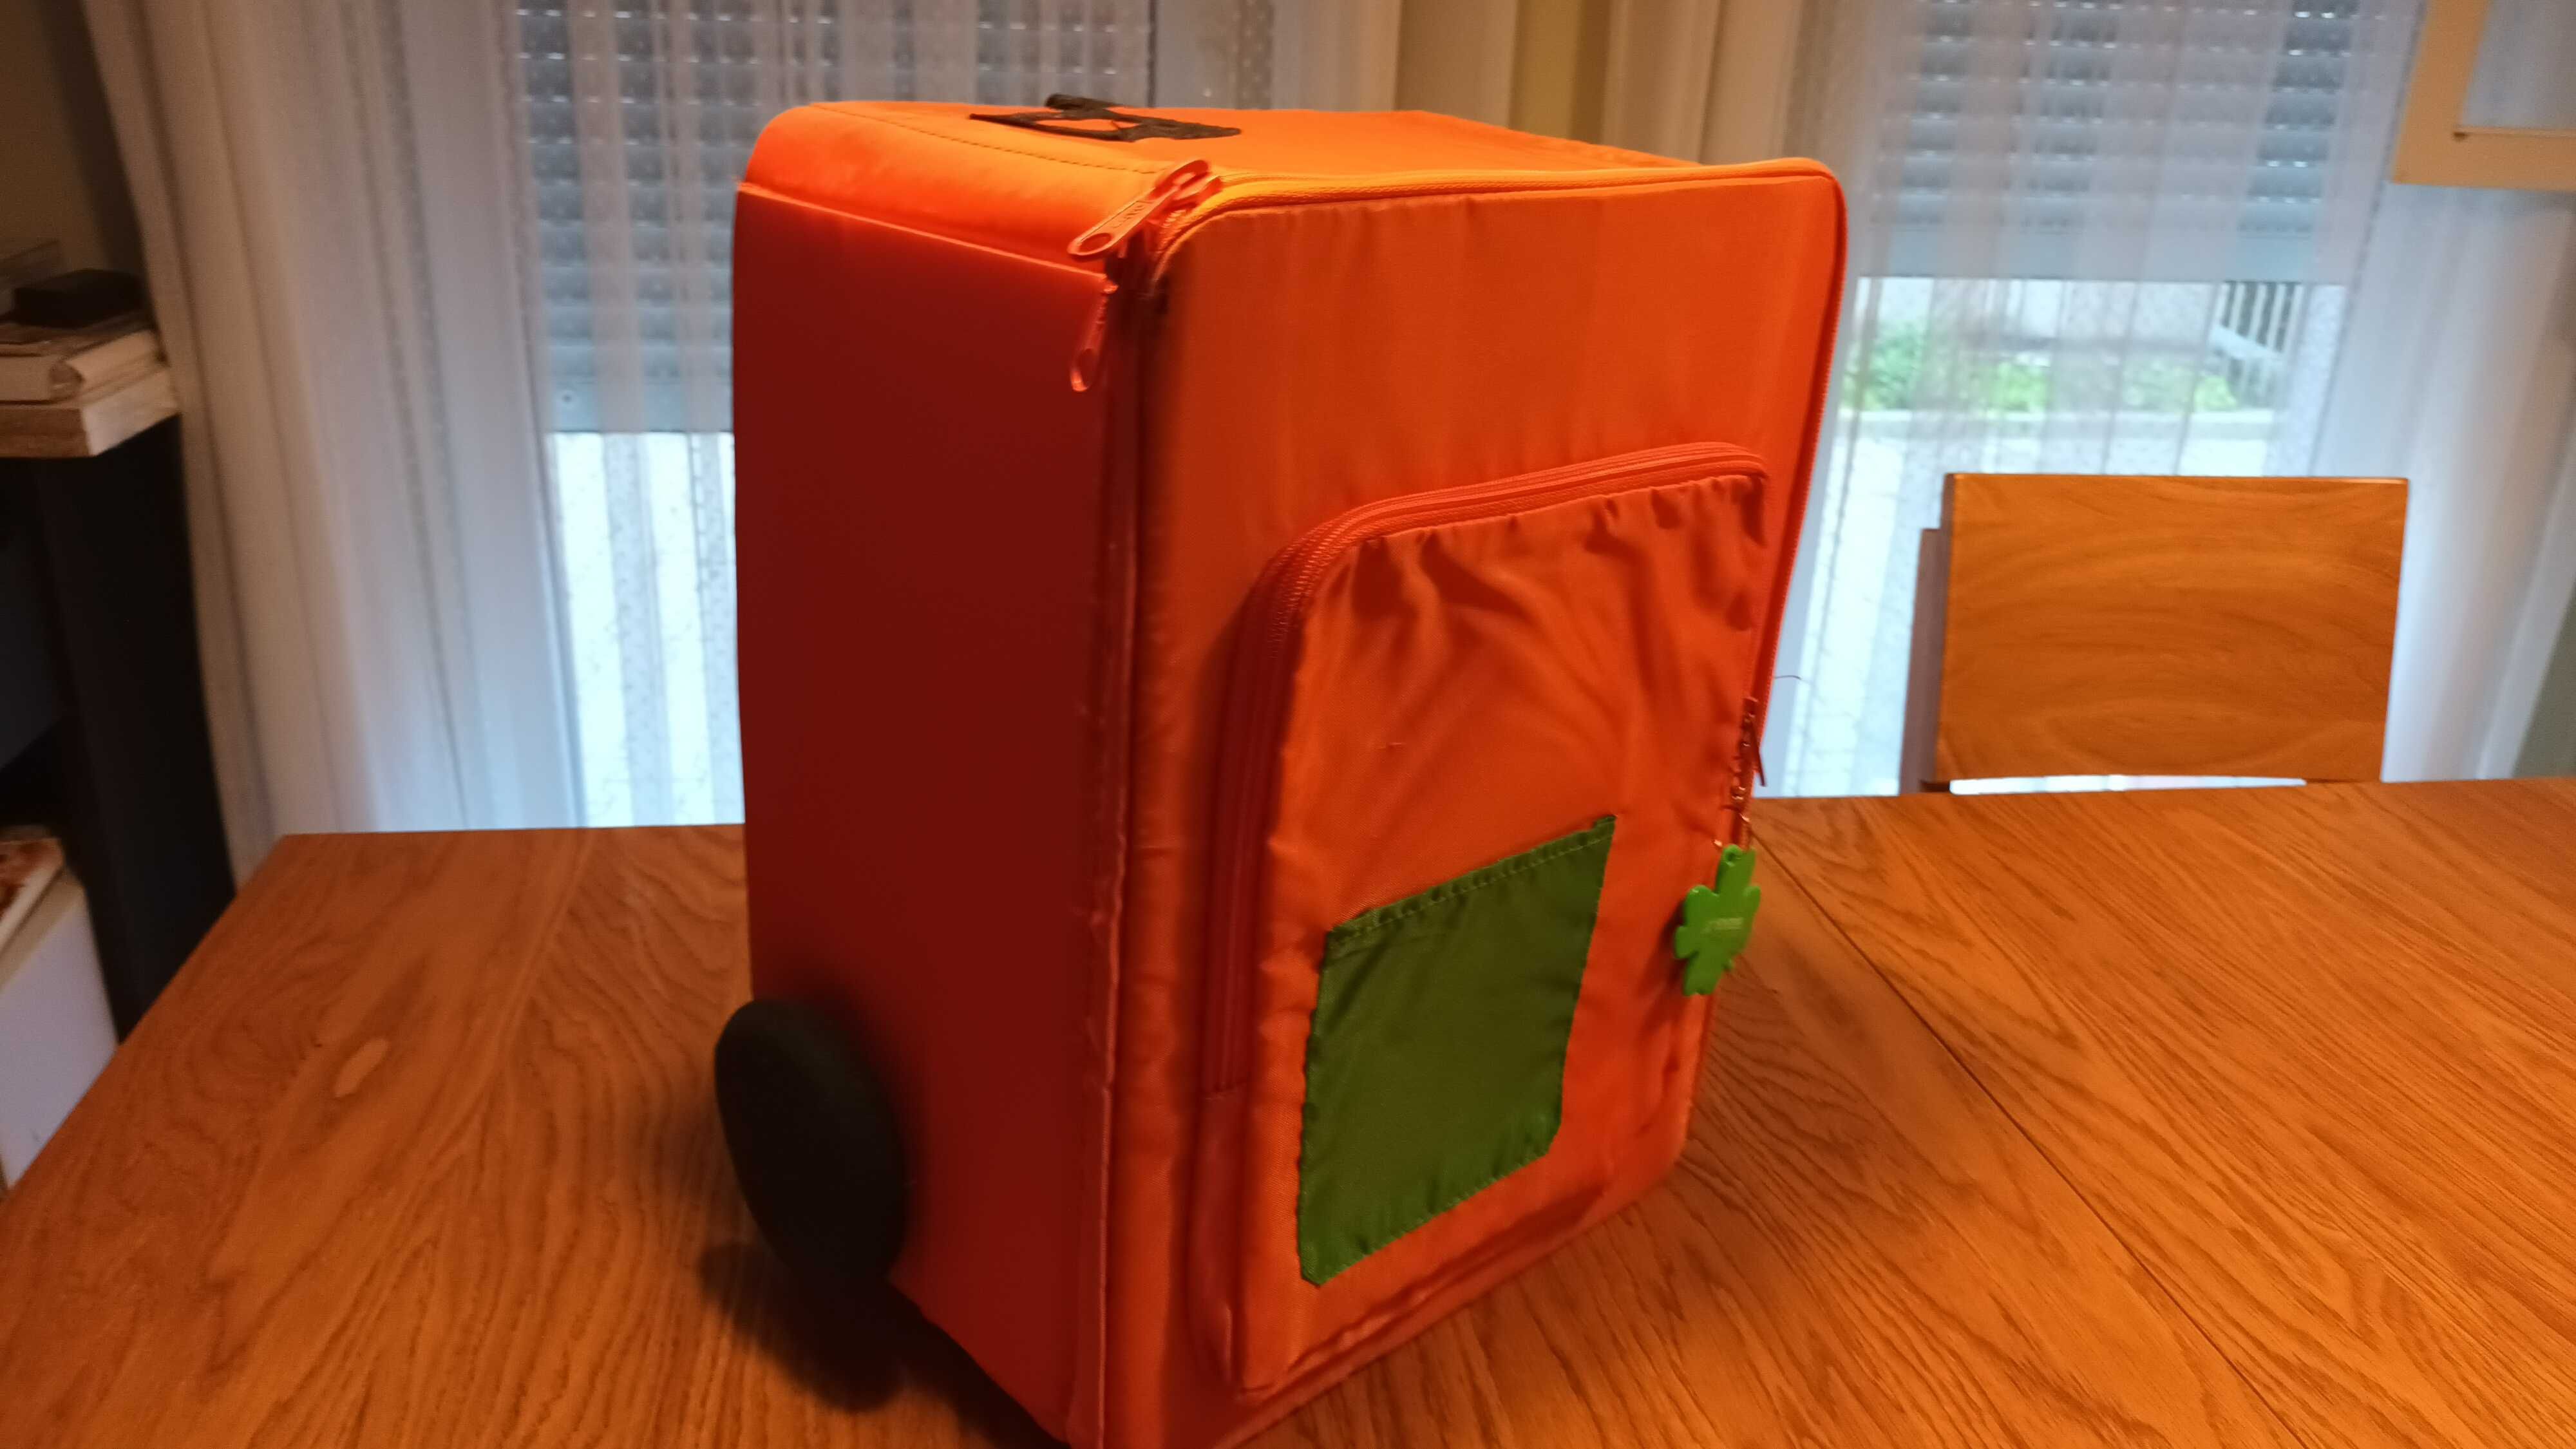 walizka dla dzieci podróżna turystyczna ikea